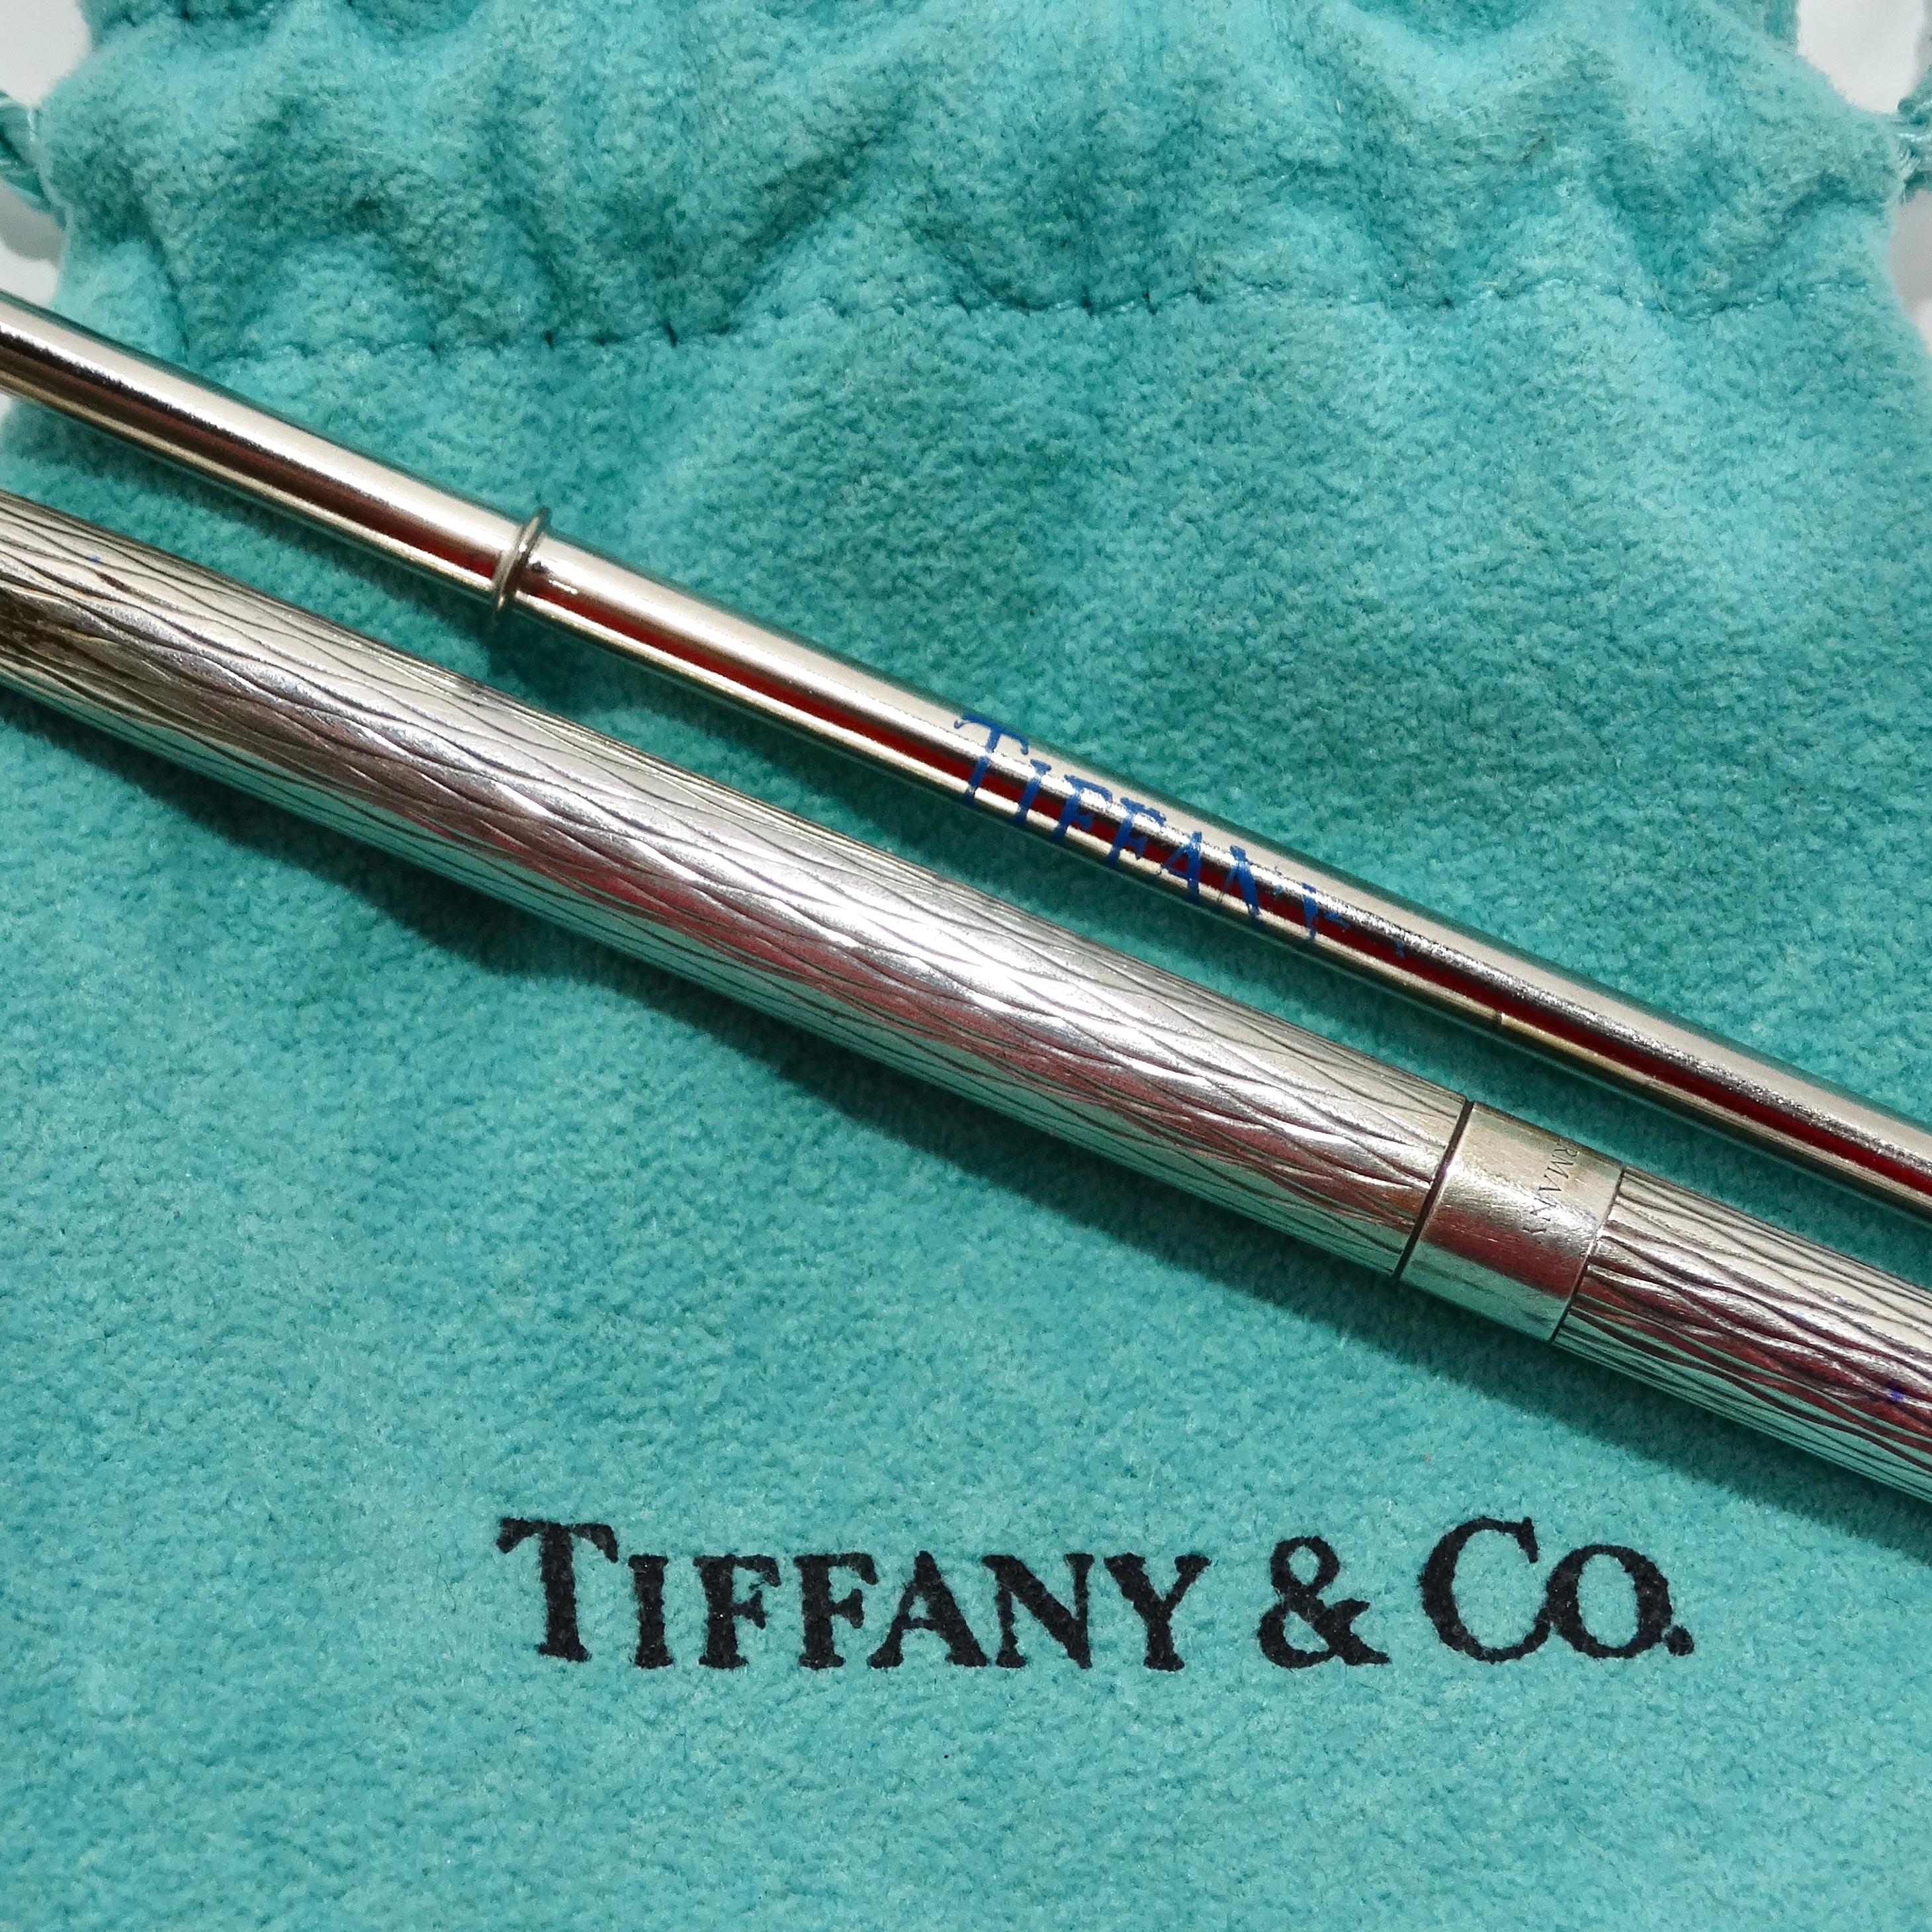 Das exquisite Tiffany & Co 1950s Pure Silver Pen & Ink Set ist eine zeitlose und luxuriöse Ergänzung für jeden Schreibtisch oder Arbeitsbereich. Dieser aus reinem Silber gefertigte Vintage-Kugelschreiber von Tiffany & Co zeichnet sich durch ein